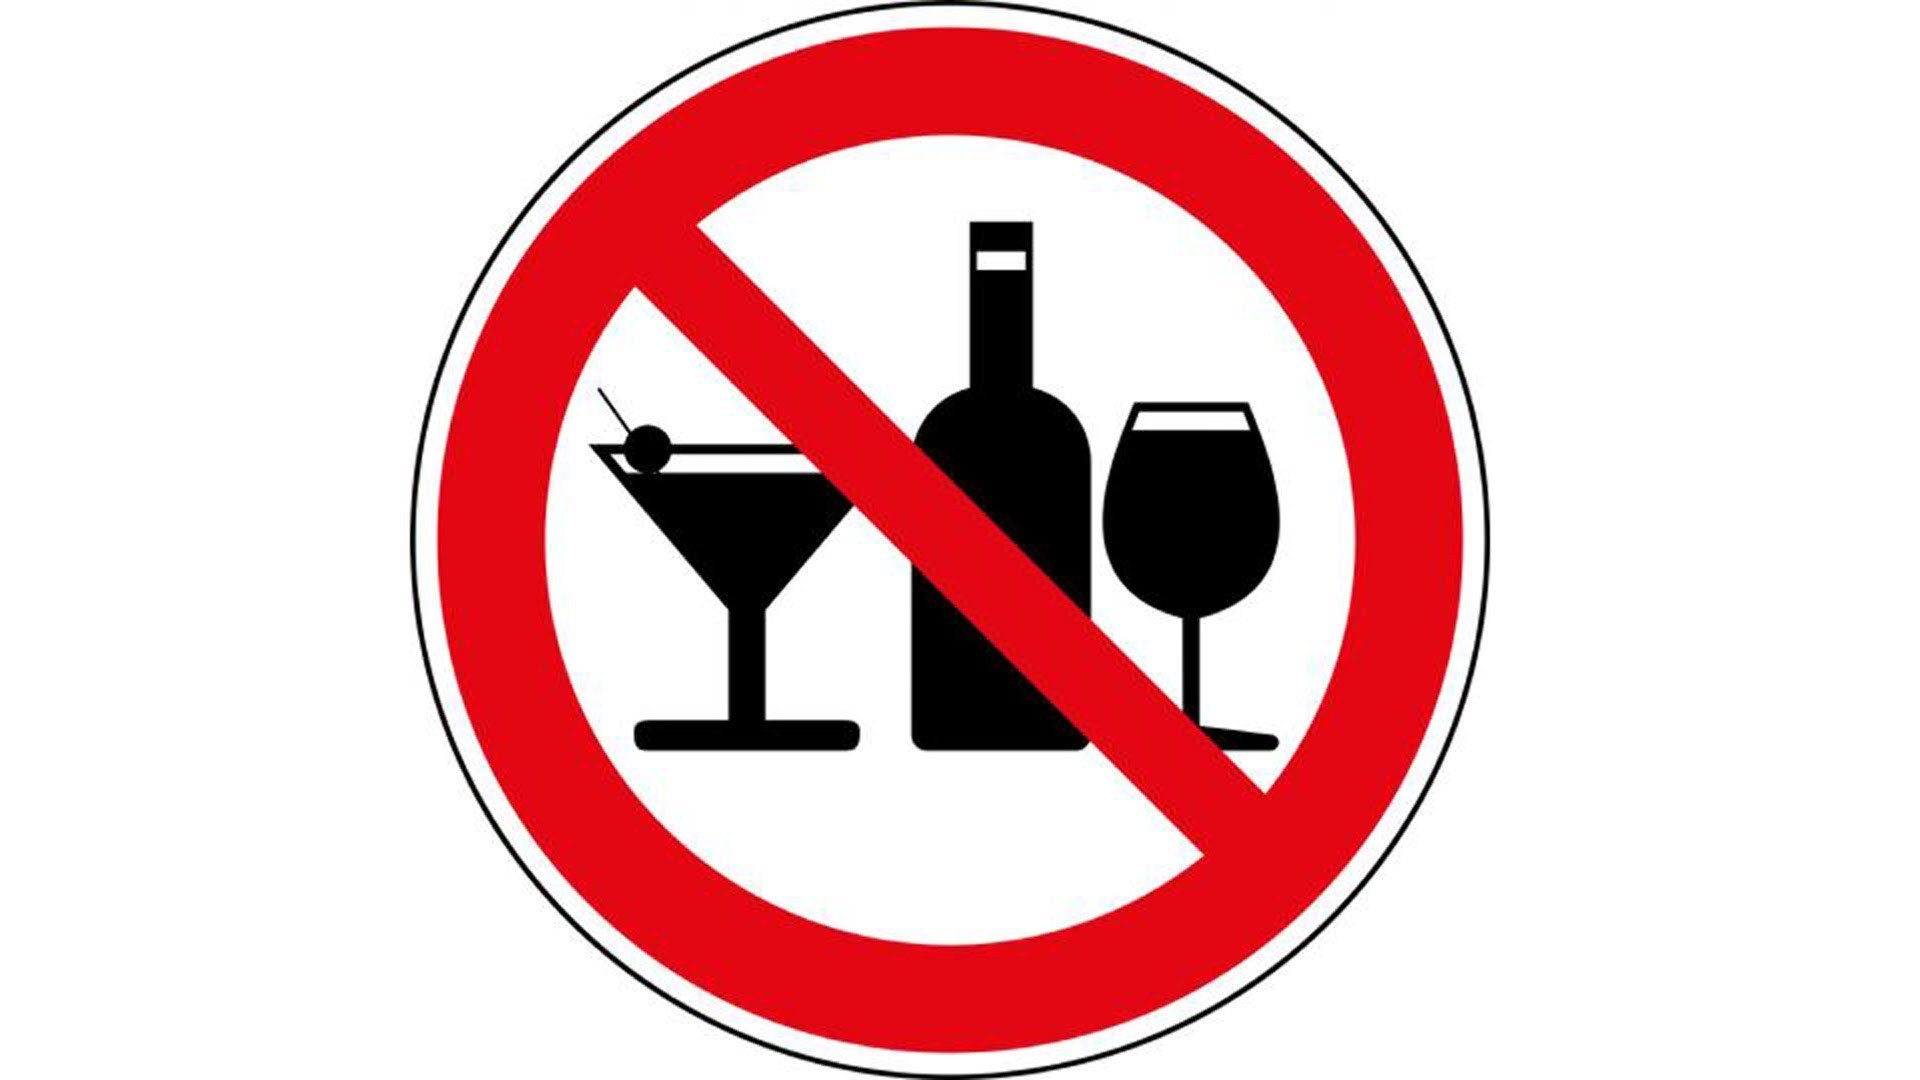 Реализация запрещена ограничена. Знак распитие спиртных напитков запрещено. Стоп алкоголь.